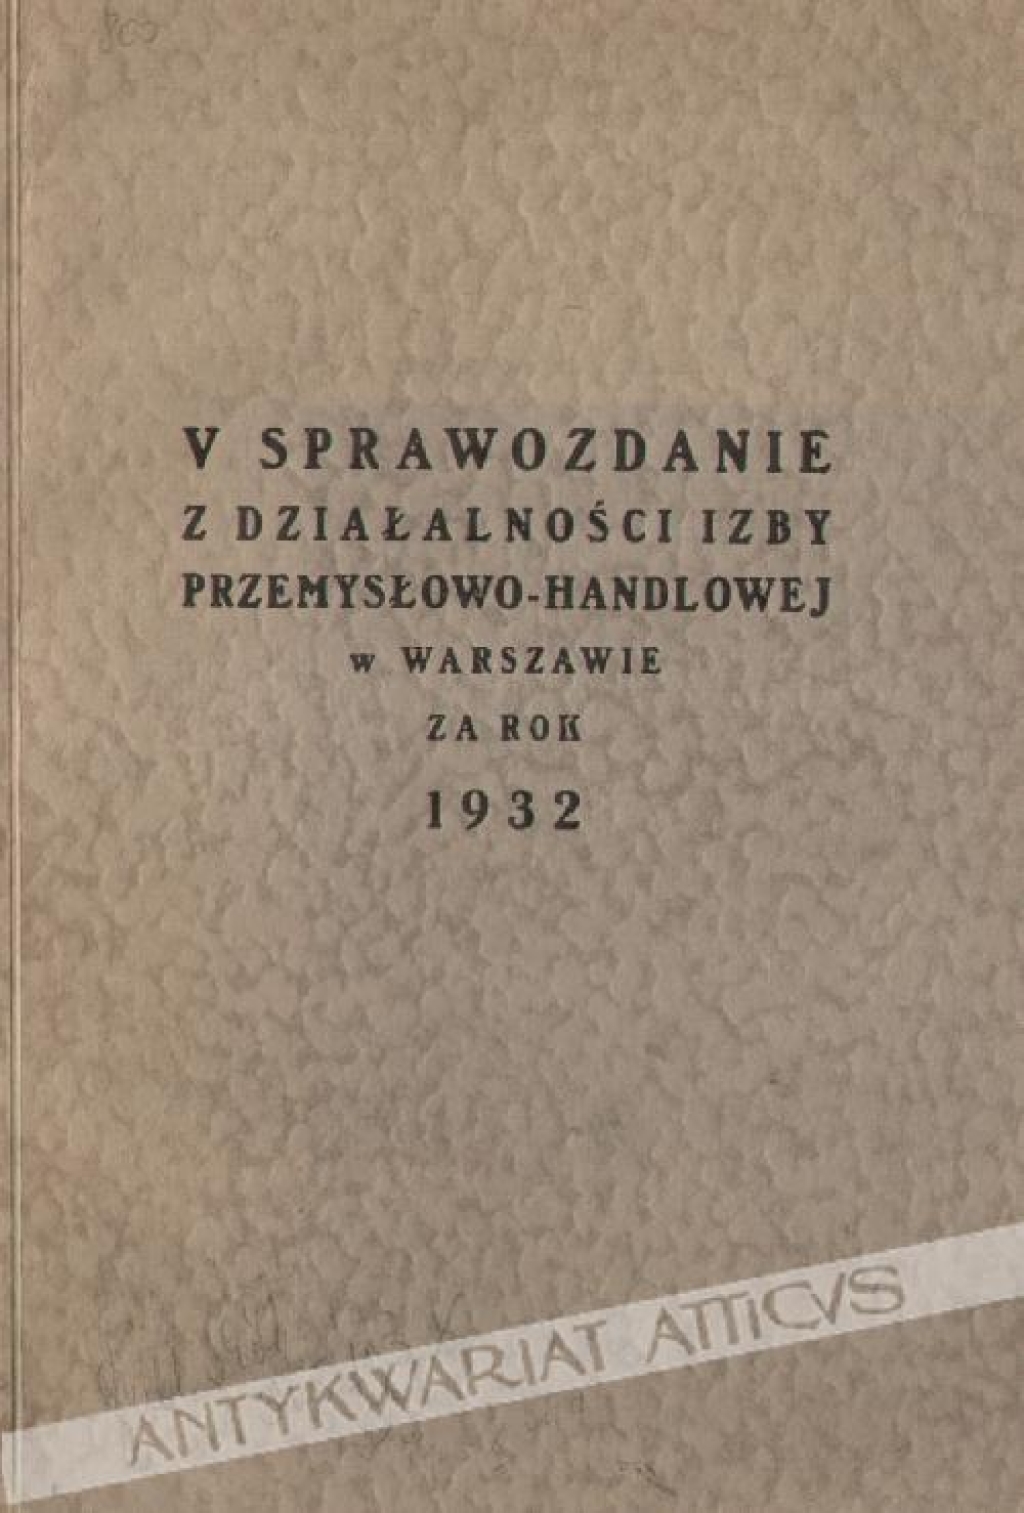 V. sprawozdanie z działalności Izby Przemysłowo-Handlowej w Warszawie za rok 1932